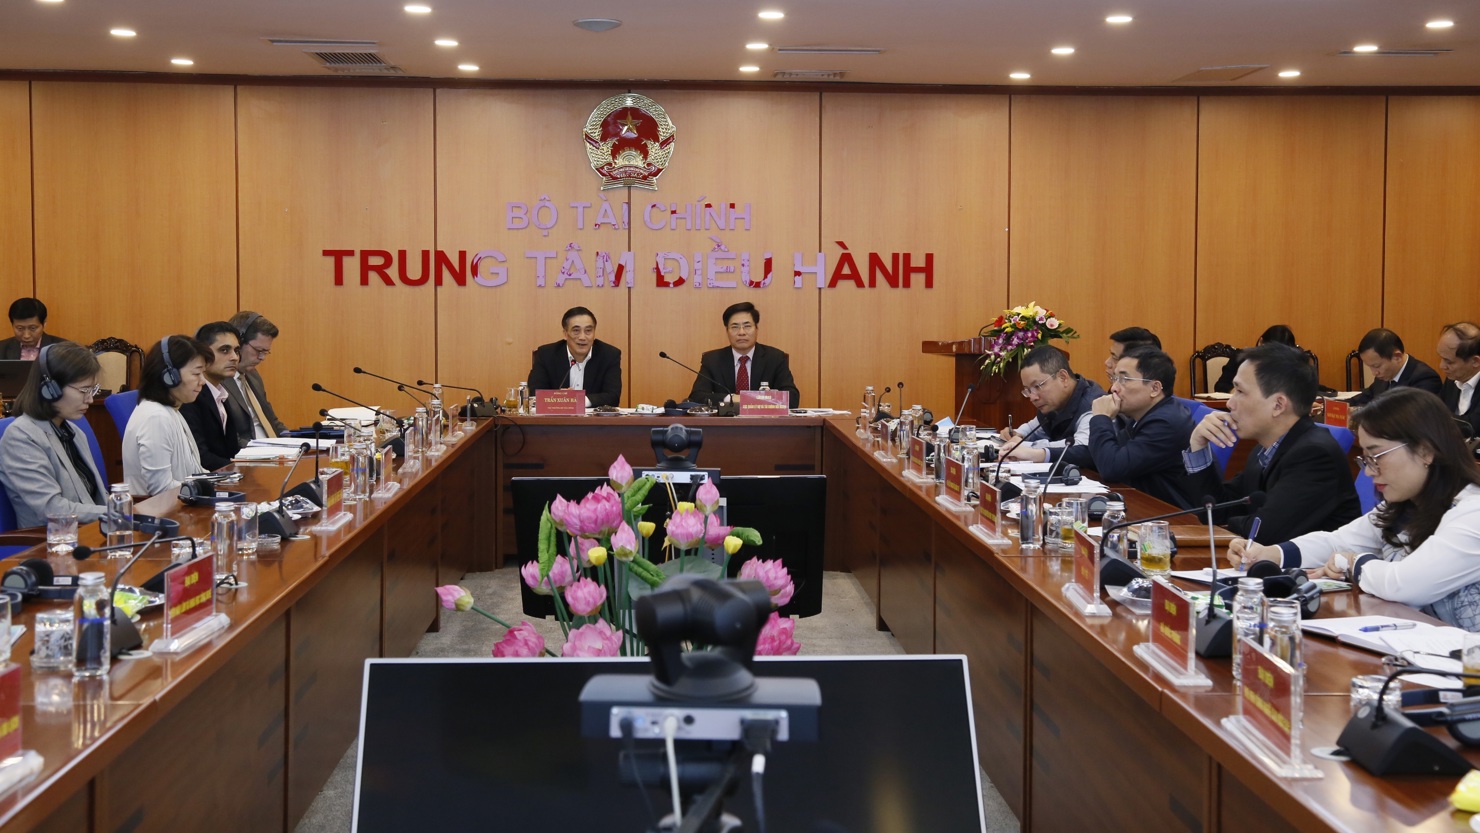 Thứ trưởng Bộ Tài chính Trần Xuân Hà chủ trì hội nghị.